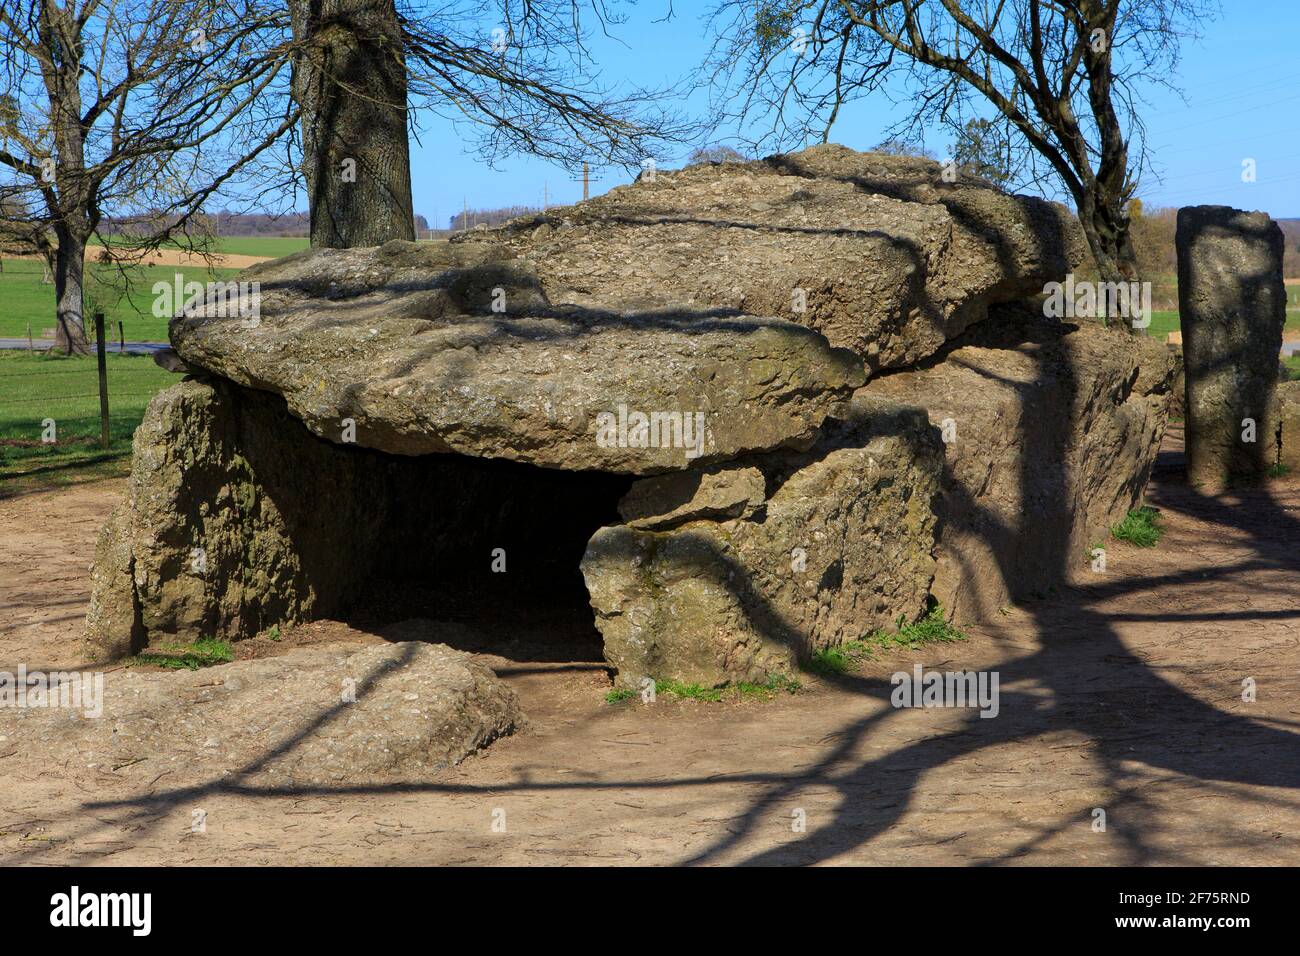 Le dolmen mémalthique de Weris I (Dolmen de Wéras) daté du 3000 av. J.-C. à Wéras (Durbuy), Belgique Banque D'Images